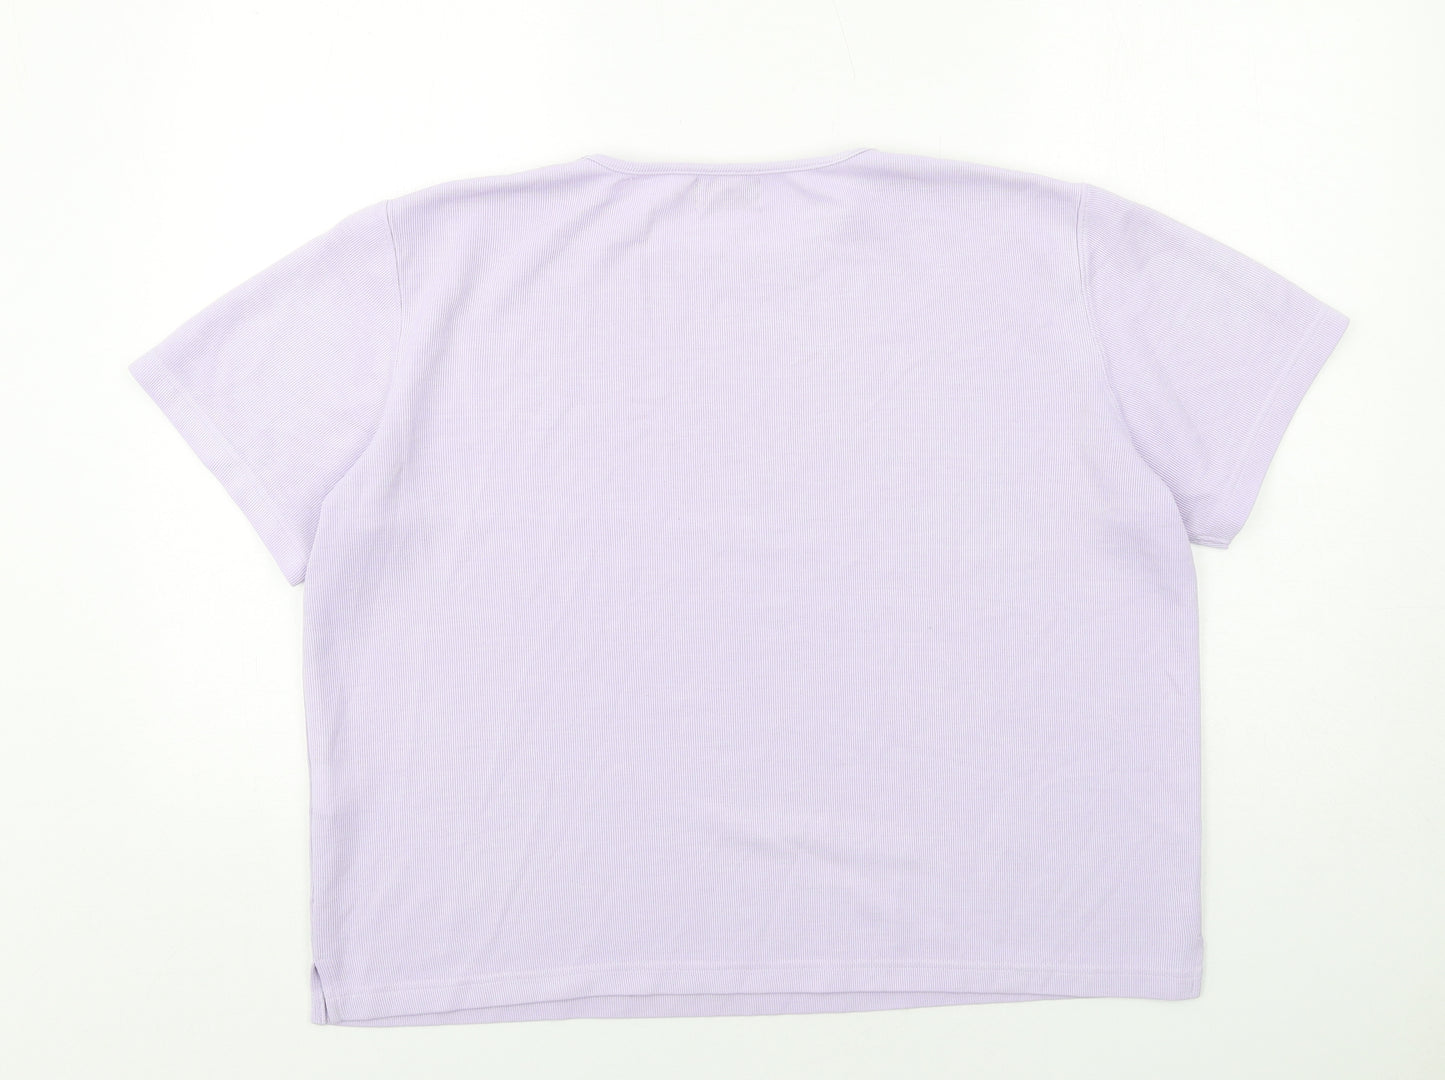 Bonmarché Womens Purple Cotton Basic T-Shirt Size L Crew Neck